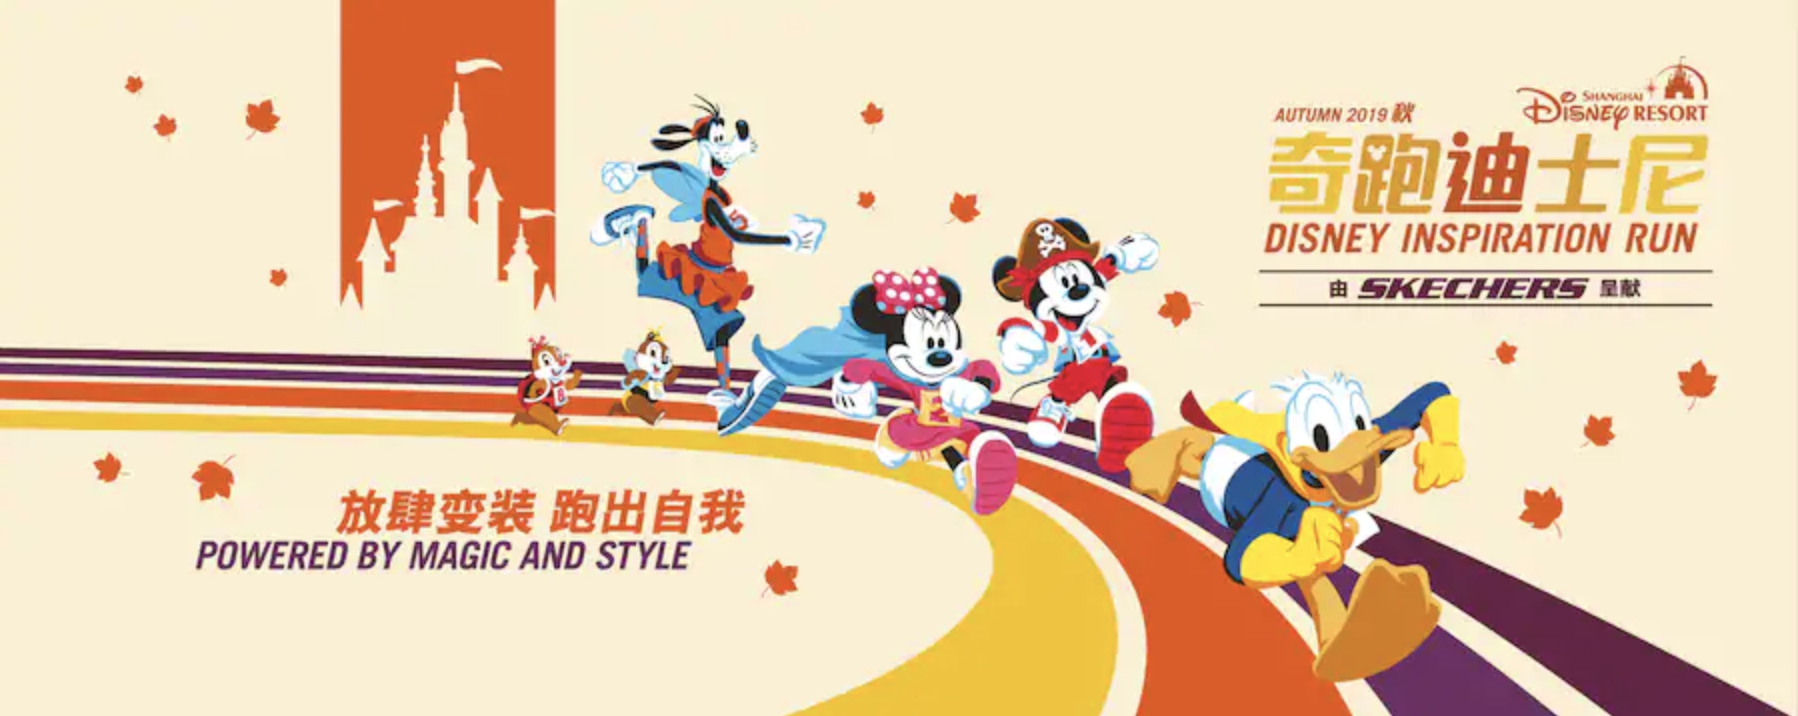 19年秋に上海ディズニーランドでもディズニーマラソン開催 19 Autumn Disney Inspiration Run 共働きくま夫婦のブログ